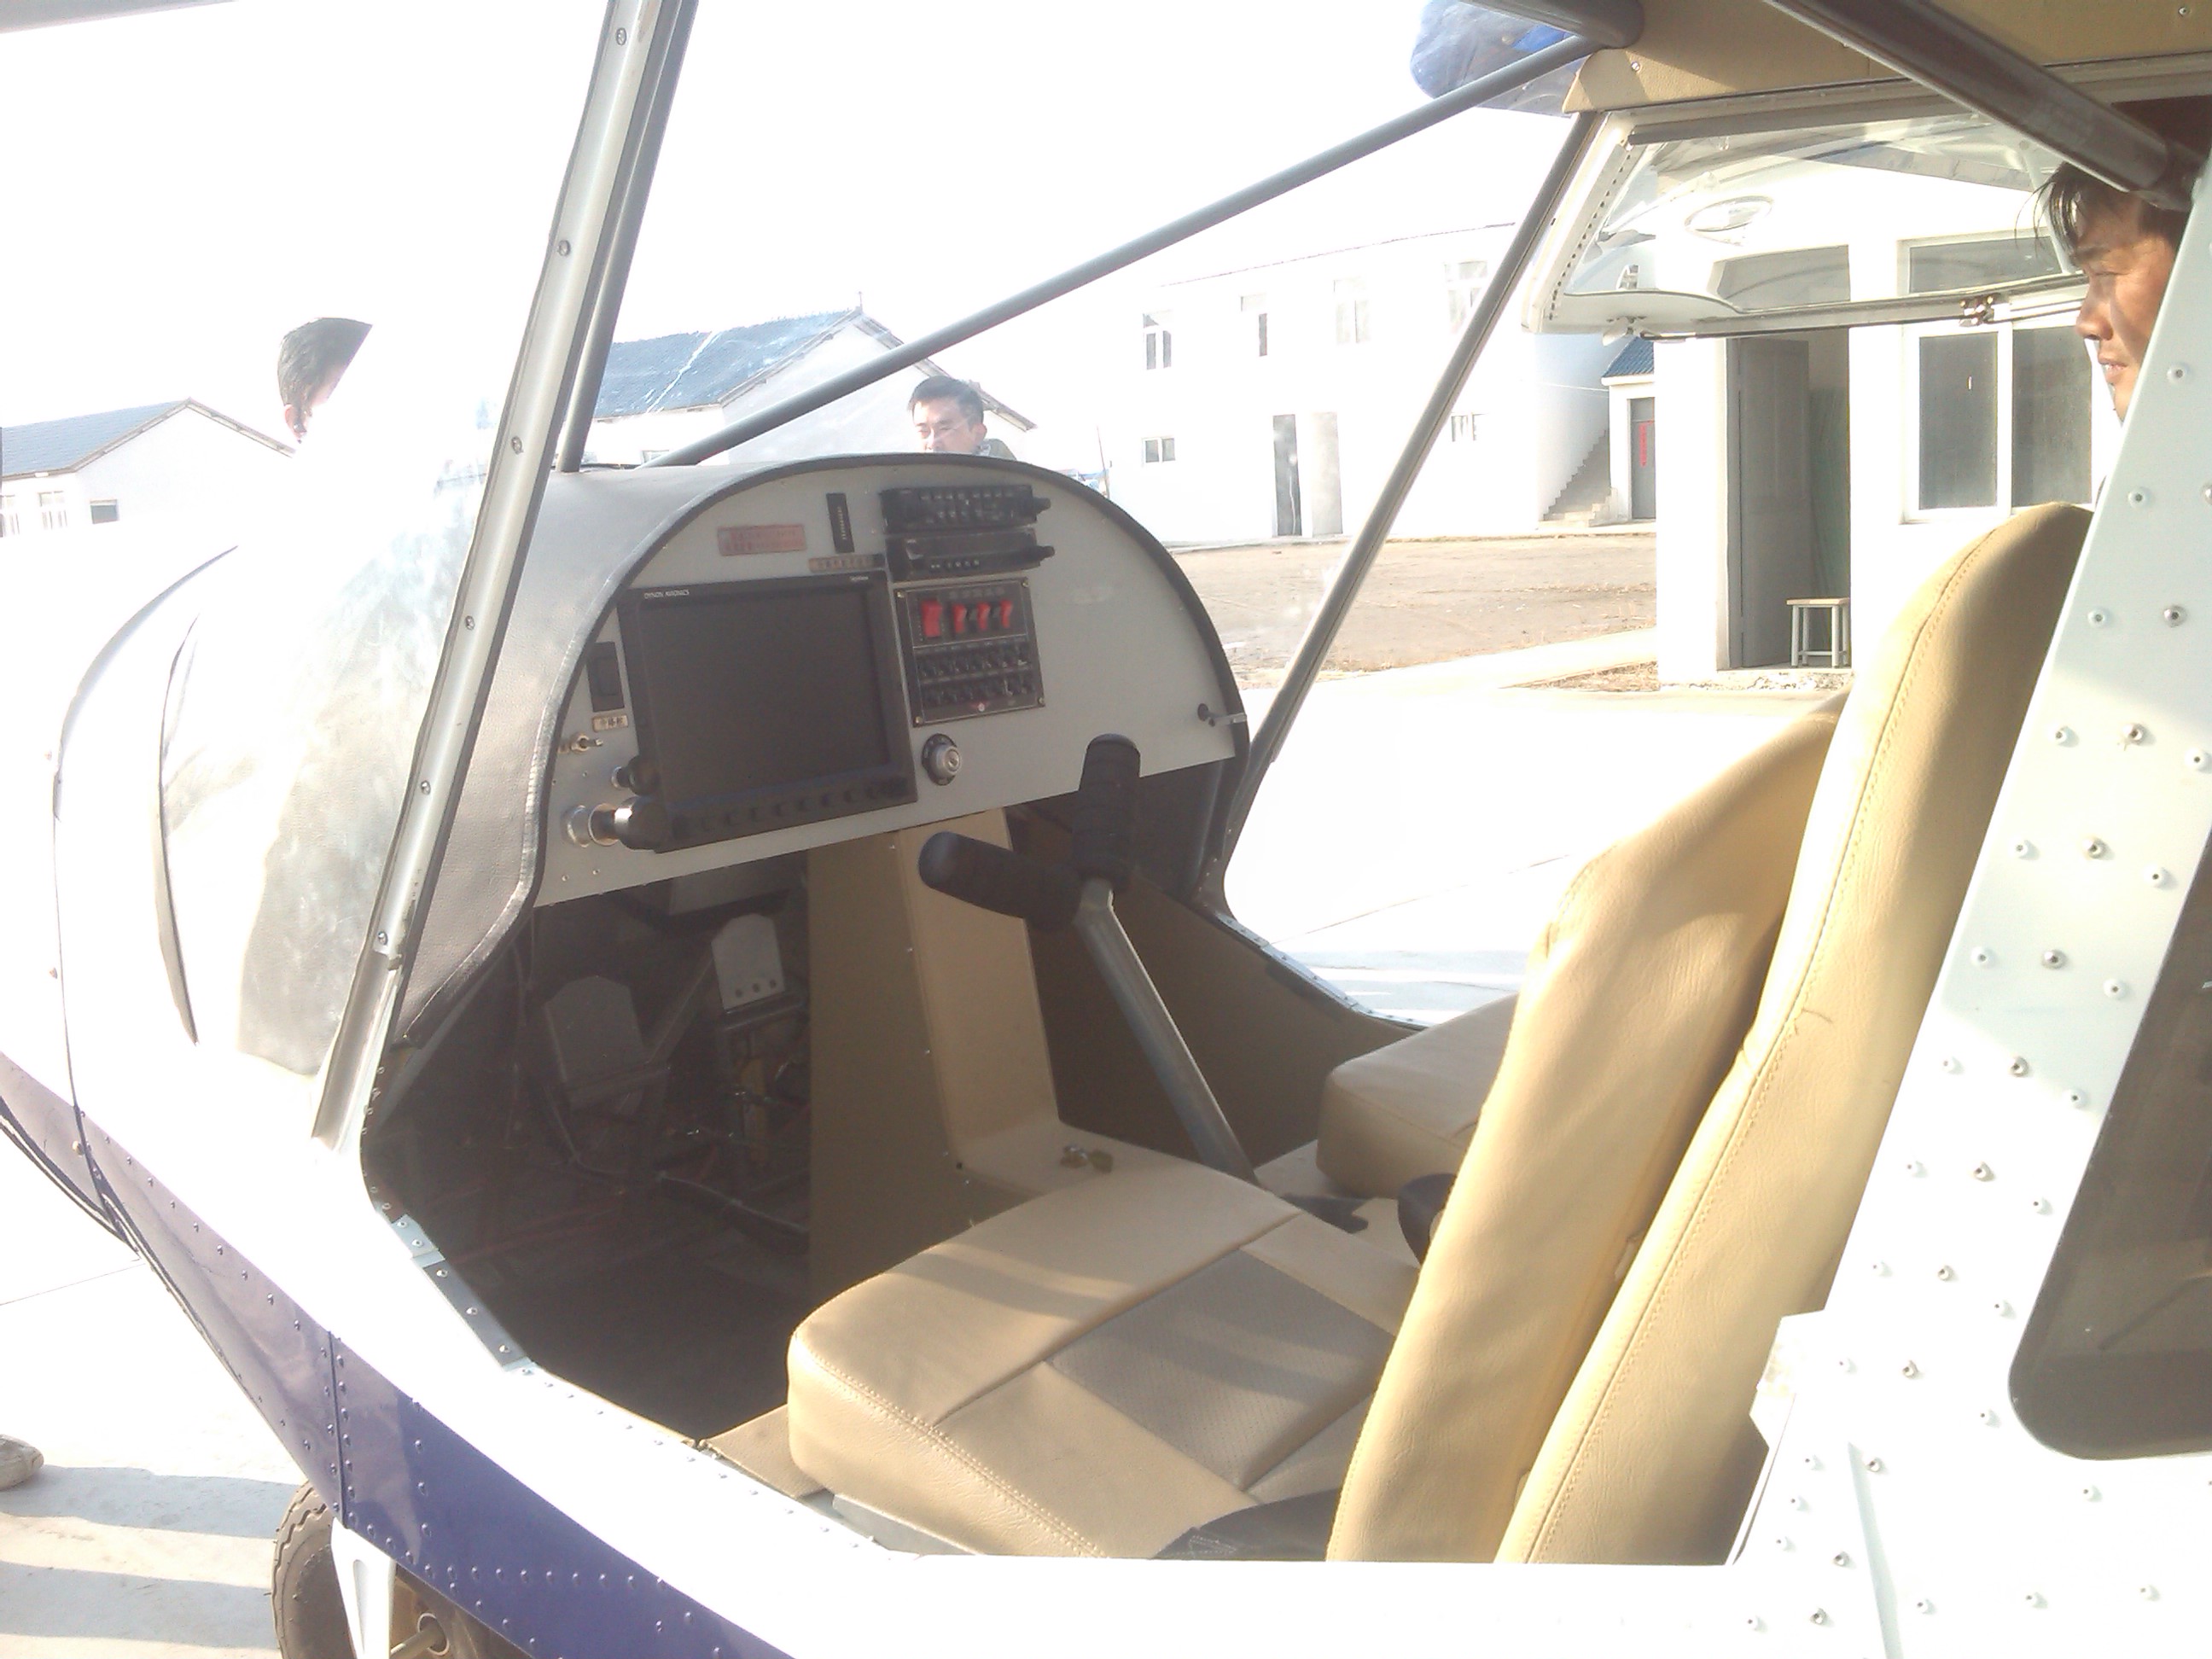 【视频图片】真实飞行体验&amp;航拍南通滨海飞机制造厂 无人机,航拍,免费,私人飞机 作者:蓝羽 454 